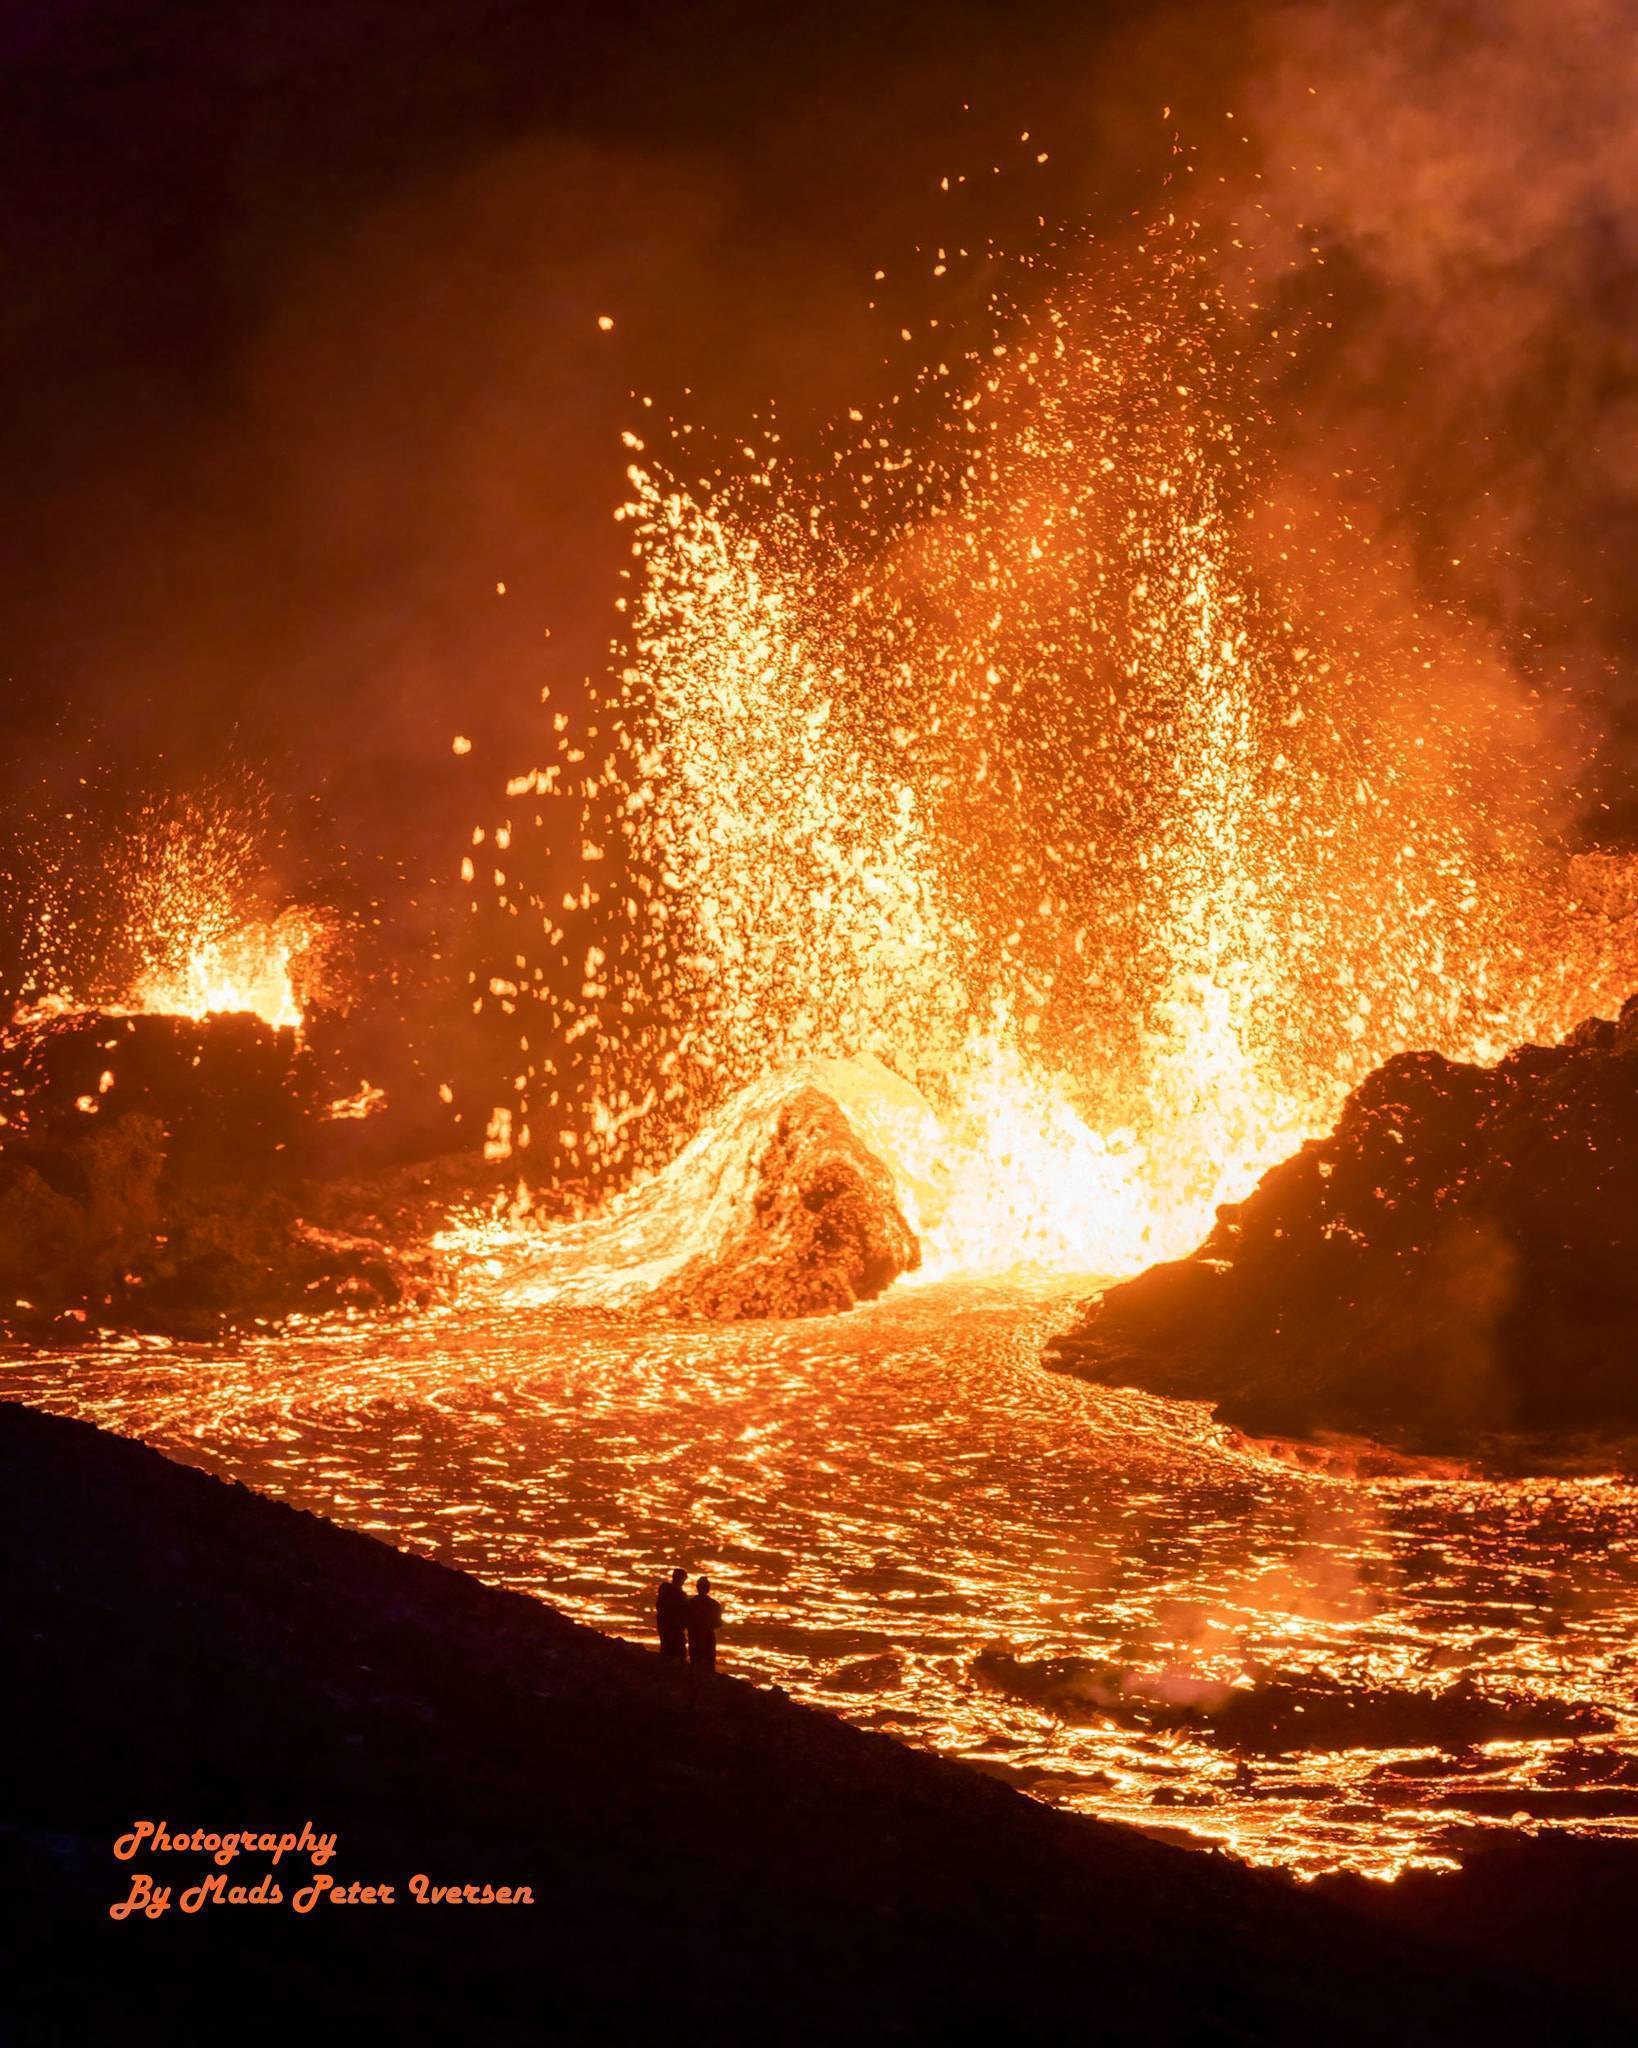 原创摄影图片欣赏史上最震撼的火山喷发图景上